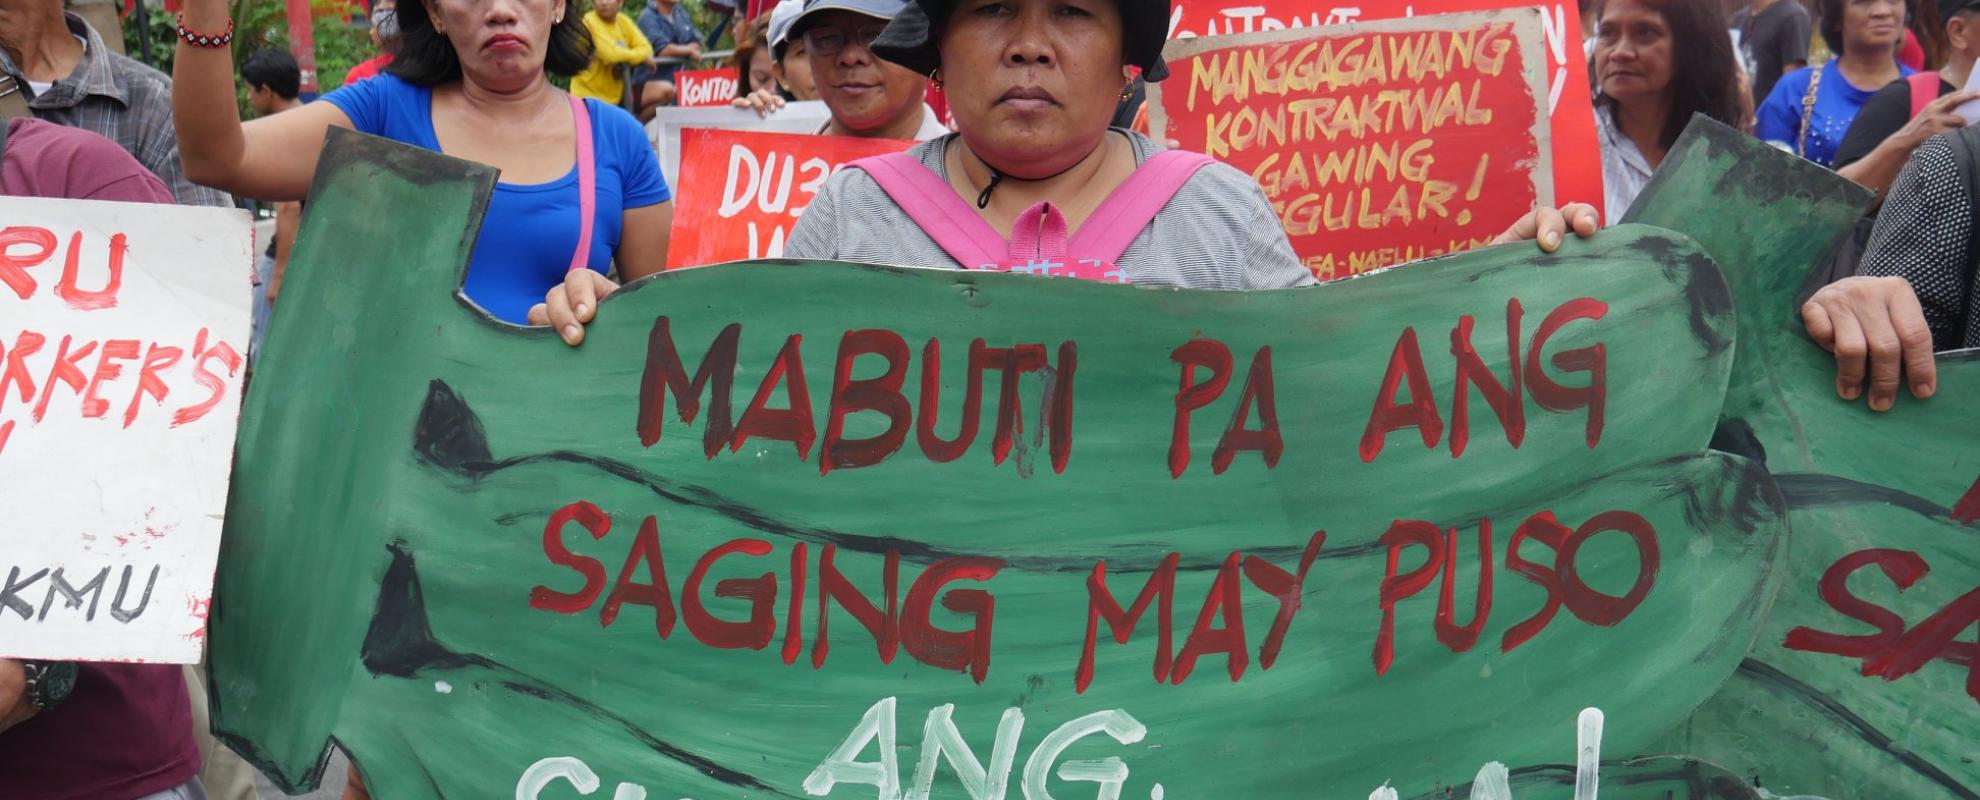 Filipijnse vrouw protesteert tegen Sumifru